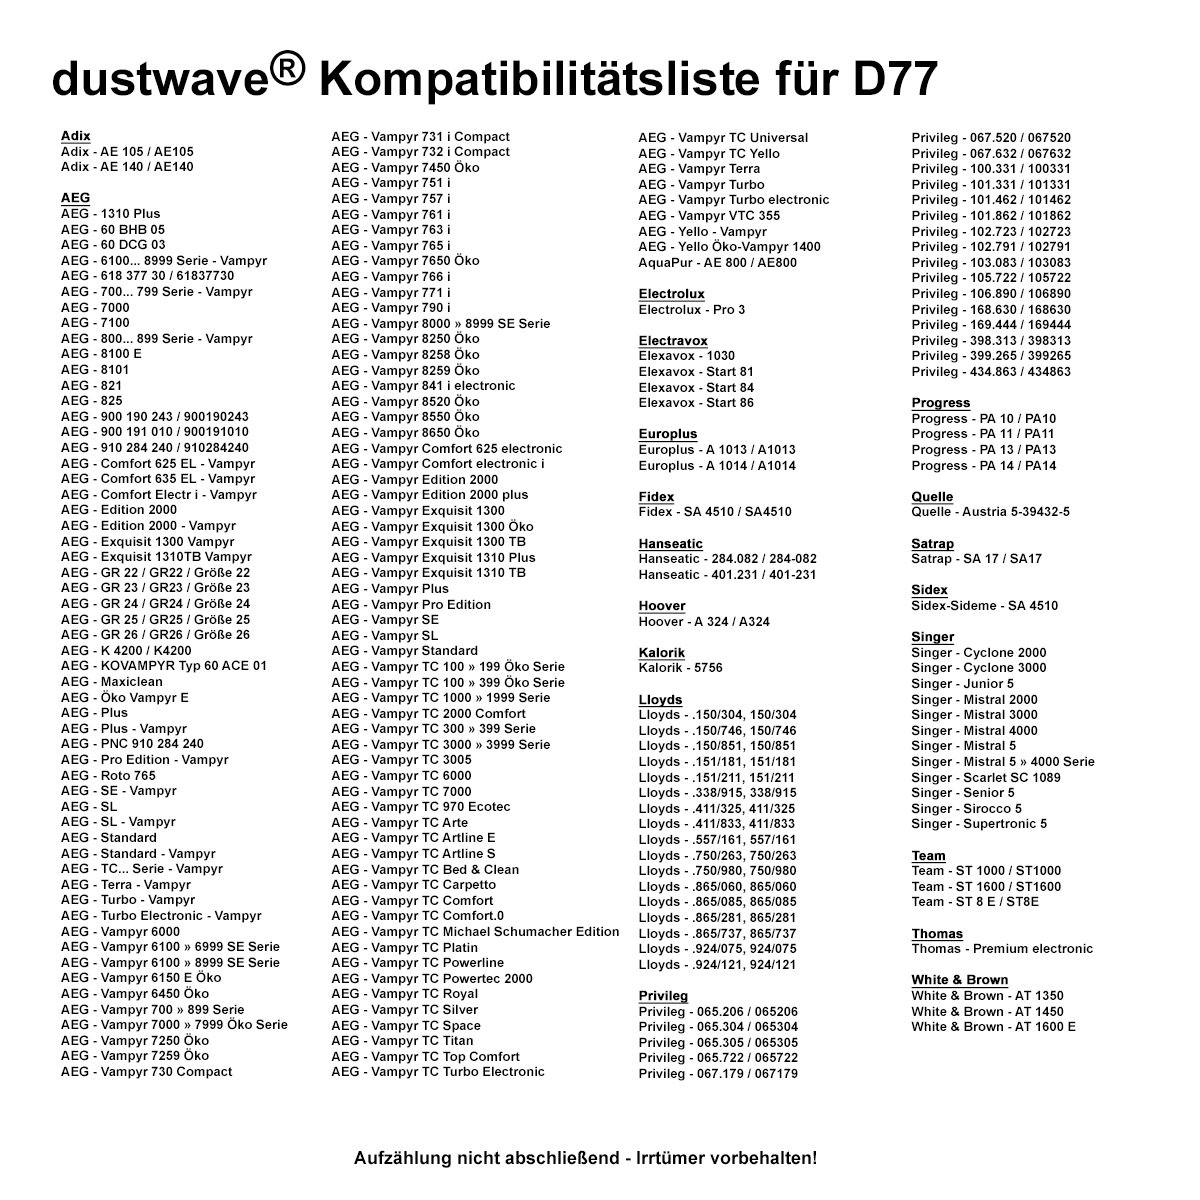 Dustwave® 40 Staubsaugerbeutel für AEG Vampyr 6210 Electronic - hocheffizient, mehrlagiges Mikrovlies mit Hygieneverschluss - Made in Germany